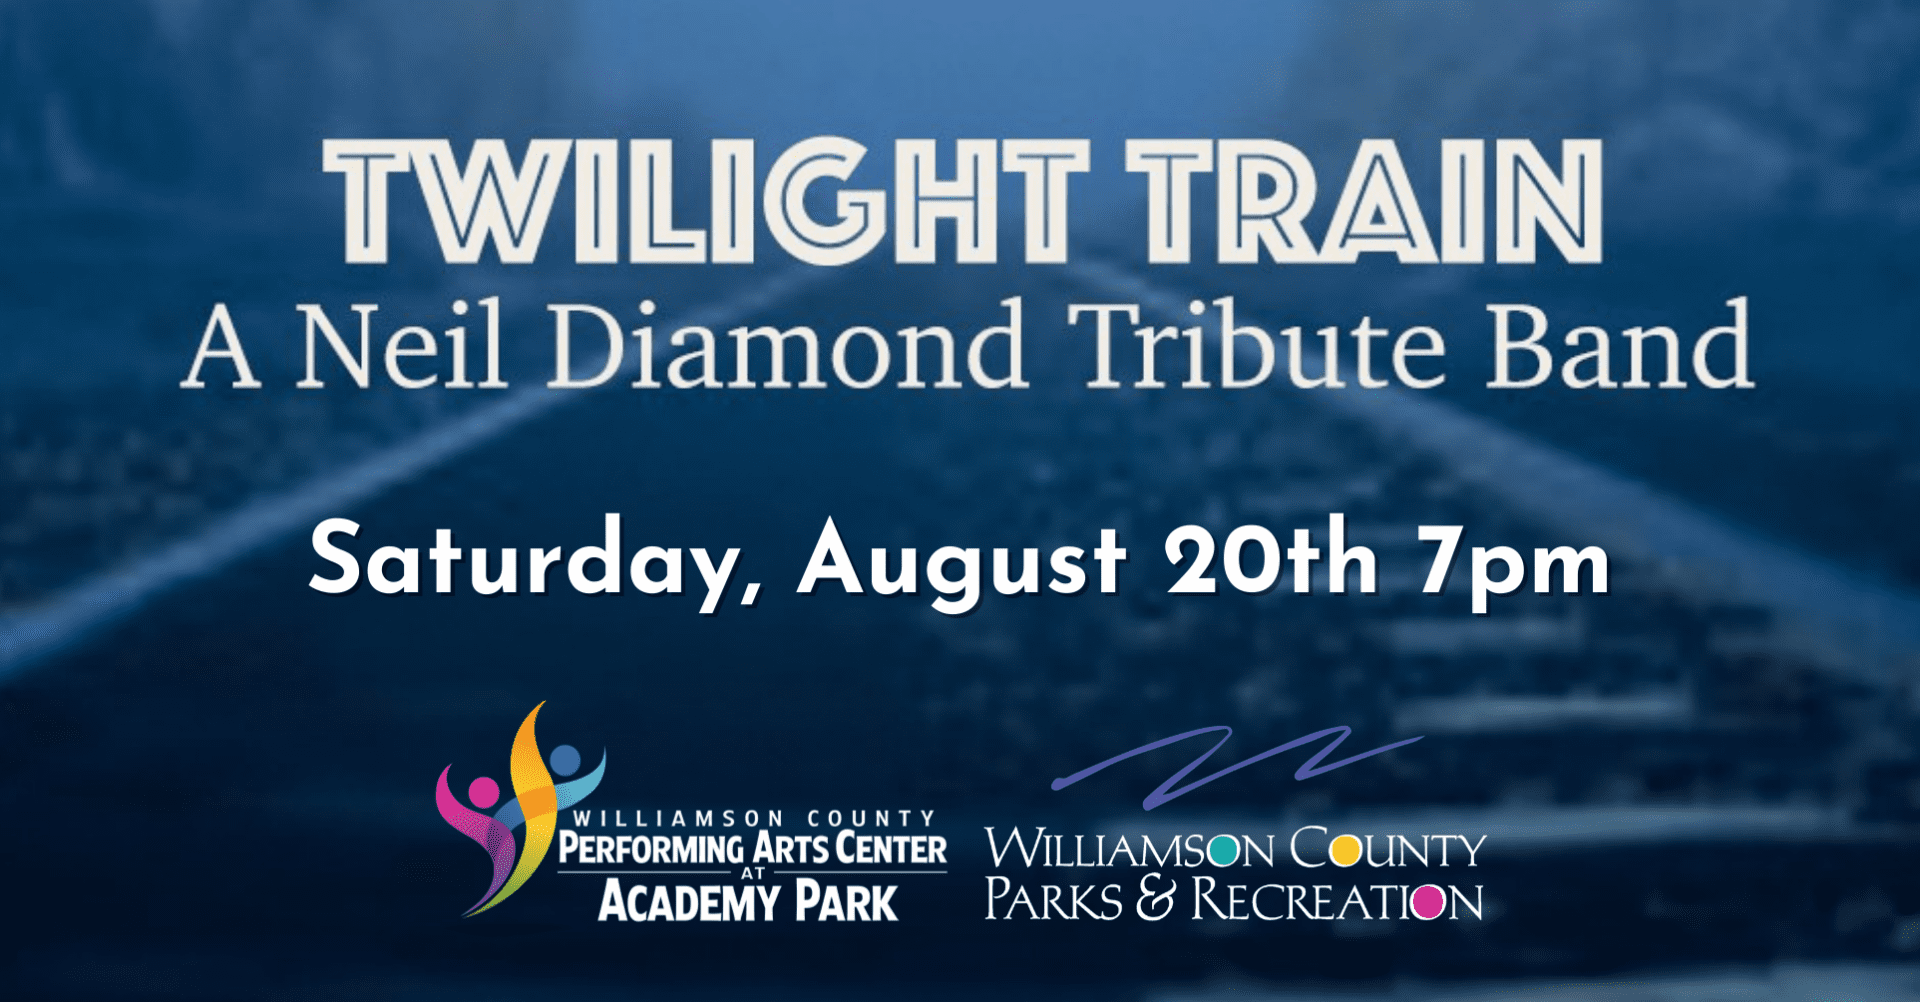 Twilight Train- Neil Diamond Tribute Franklin, TN.